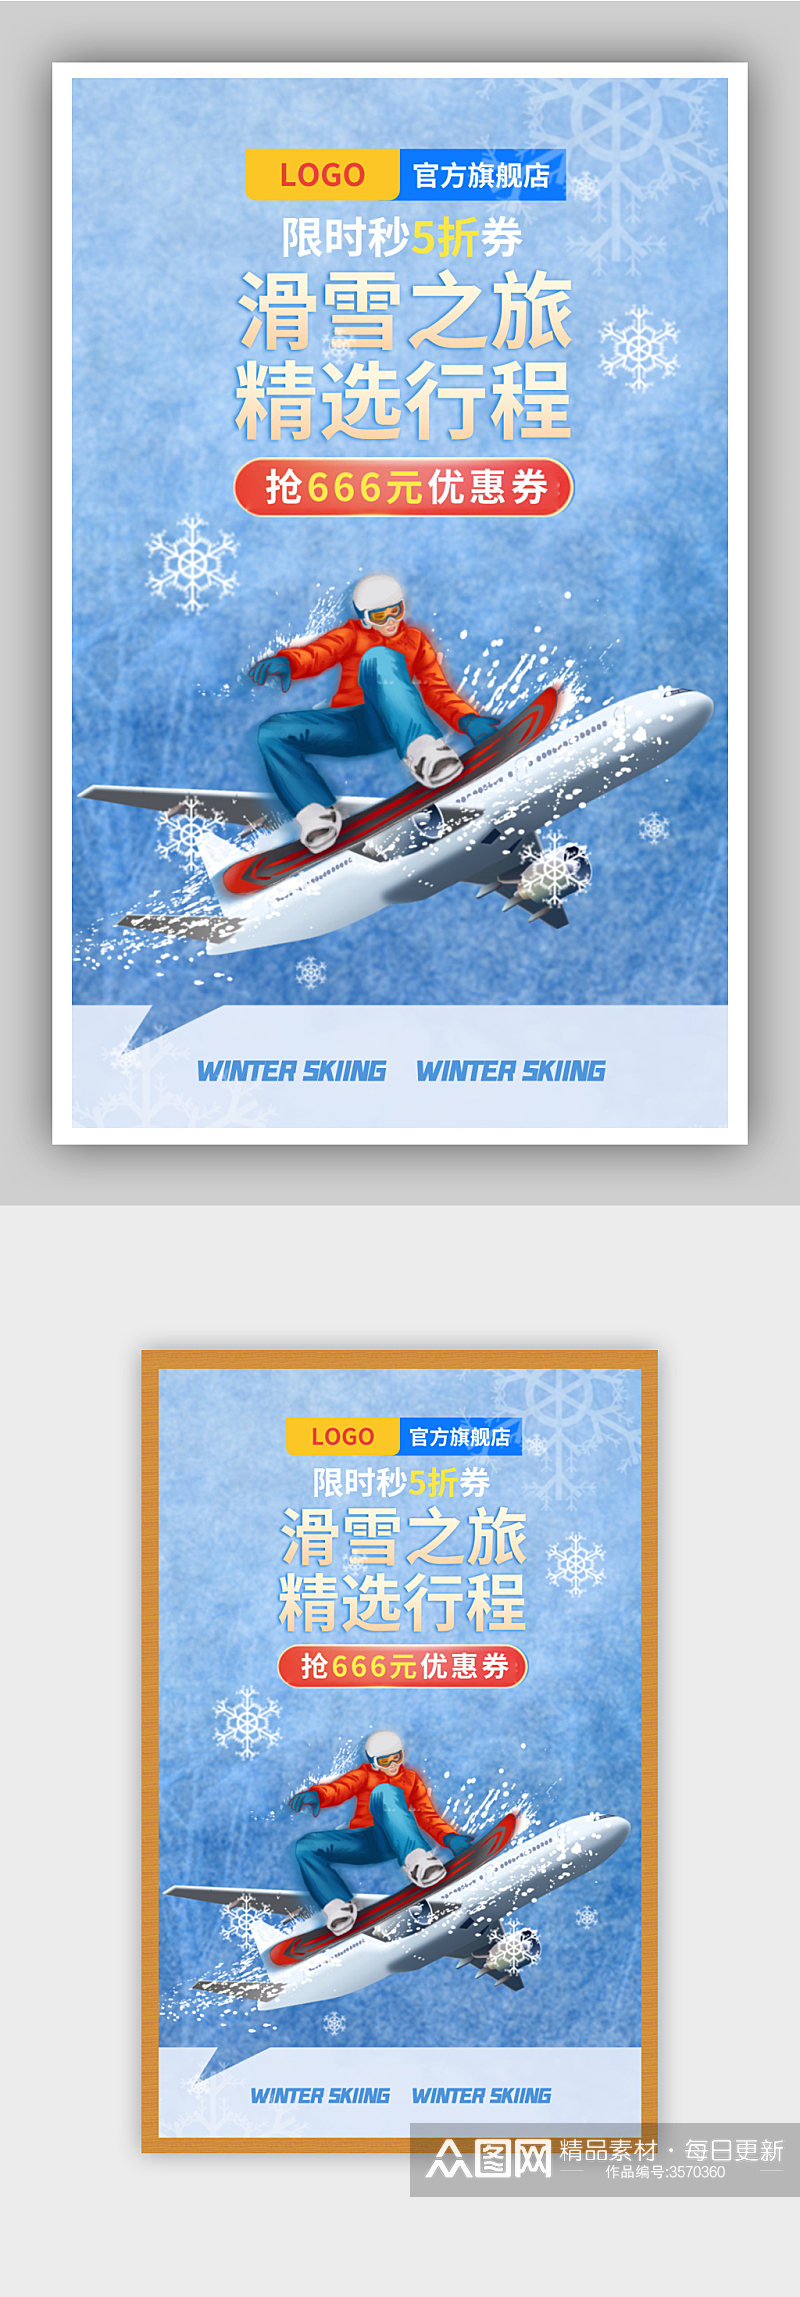 冬季滑雪旅游蓝色清新海报素材